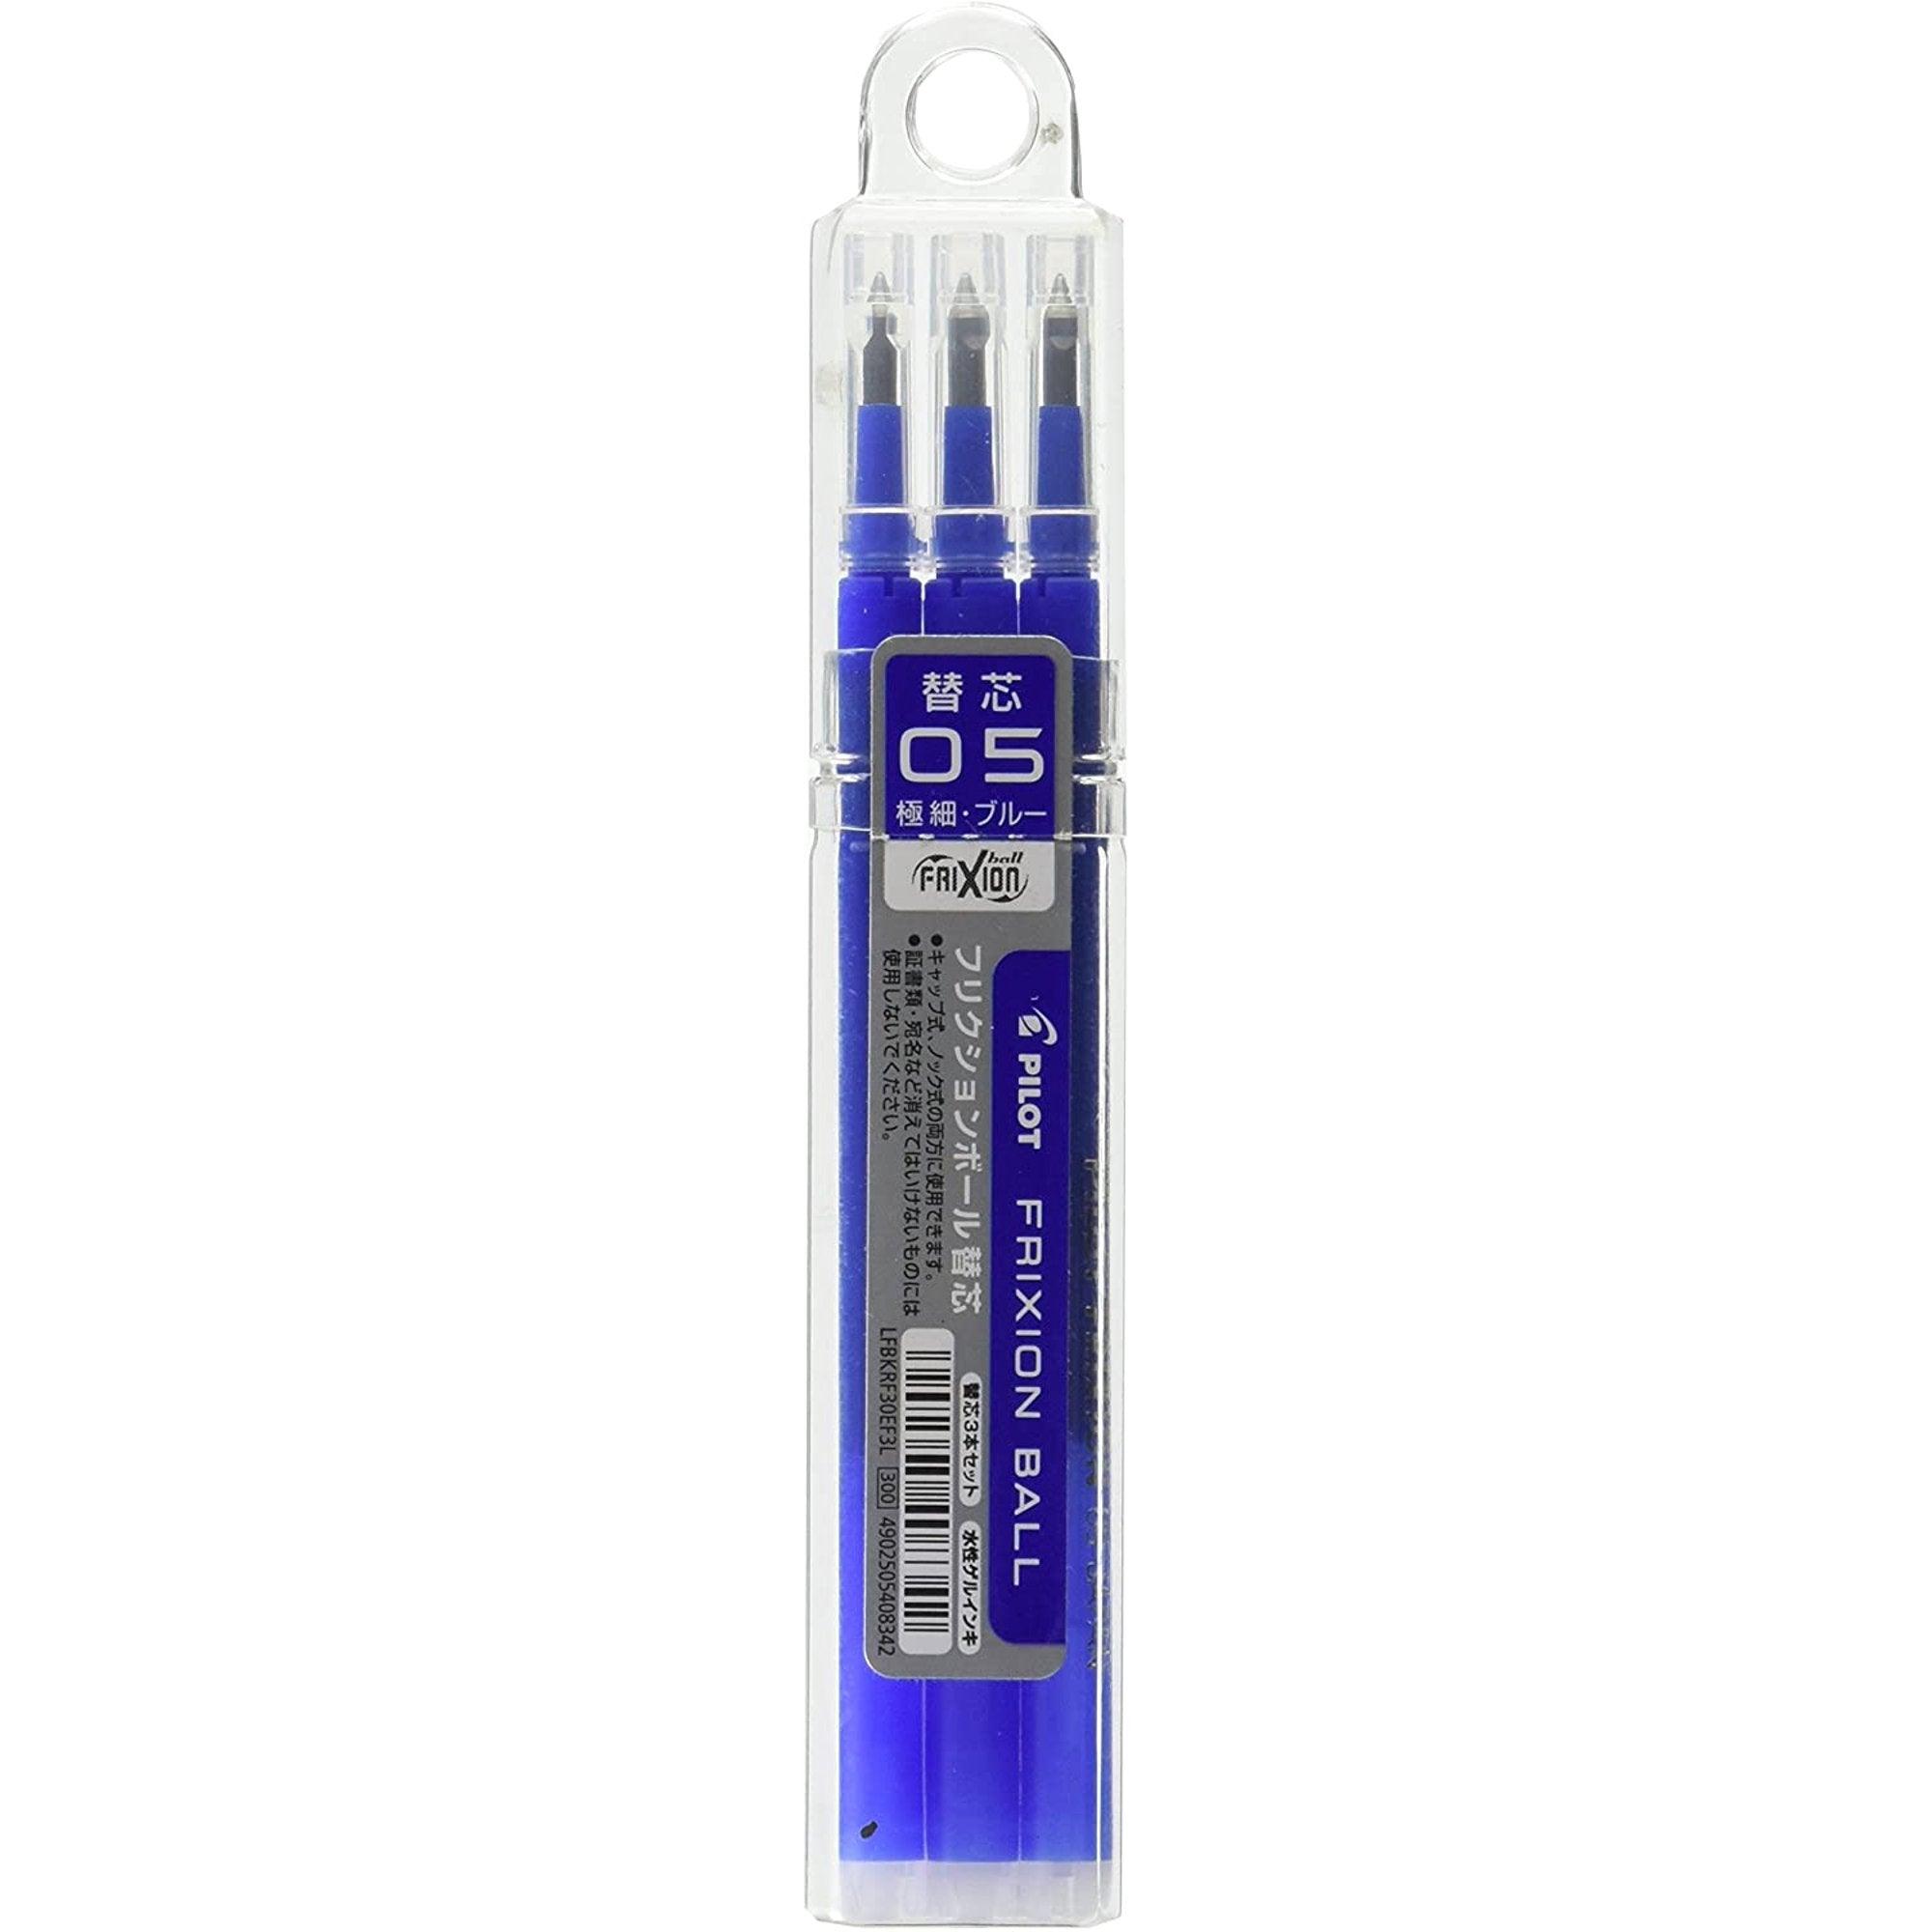 Pilot Frixion Erase Pen Refillable 0.5mm Magic Erase Capability